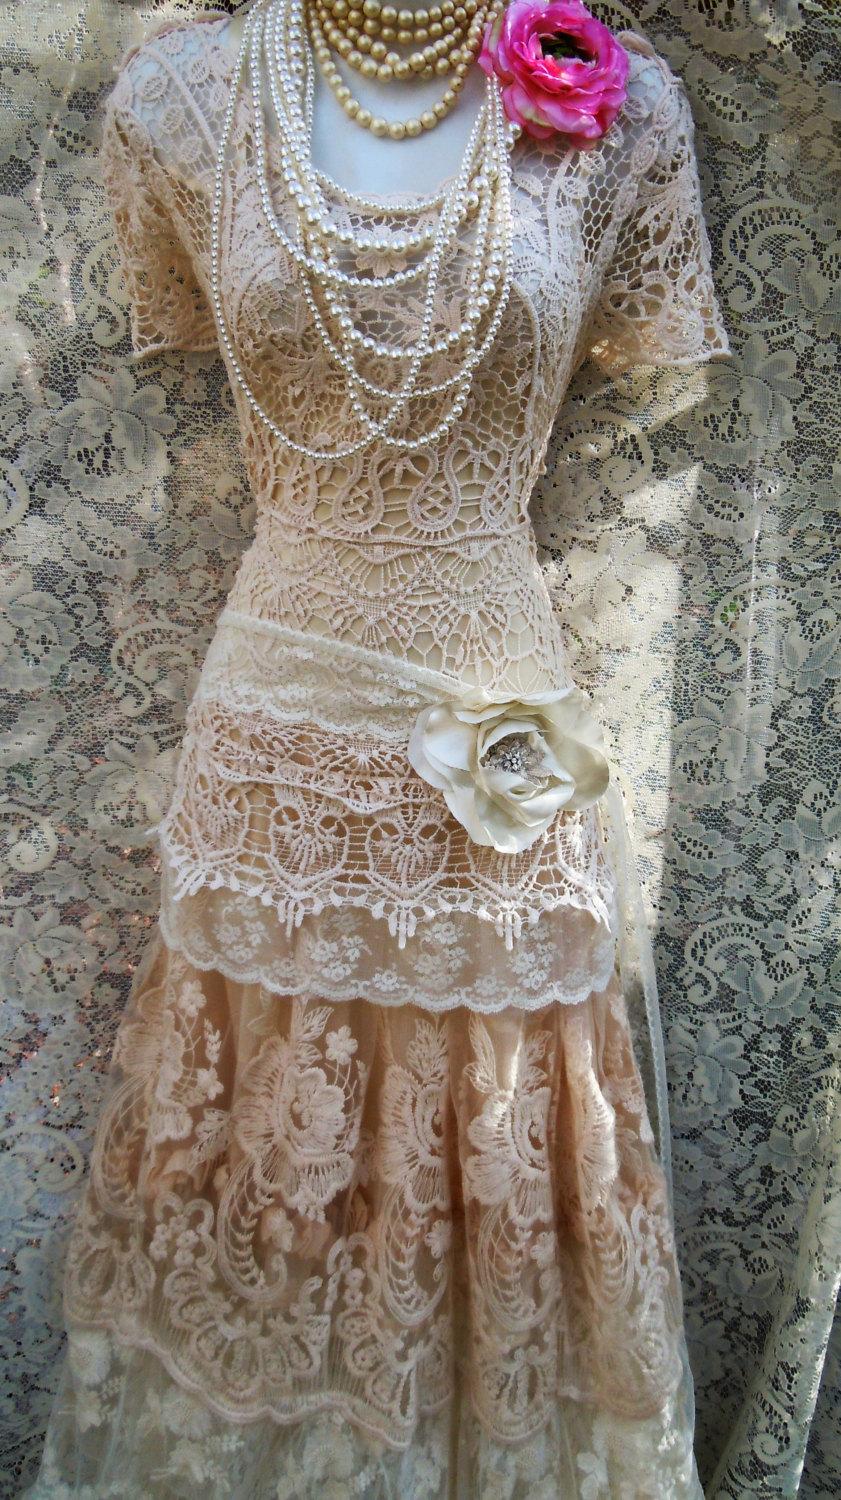 زفاف - Boho lace dress wedding cream crochet  tulle tiered   flapper  vintage  bride outdoor  romantic small  by vintage opulence on Etsy